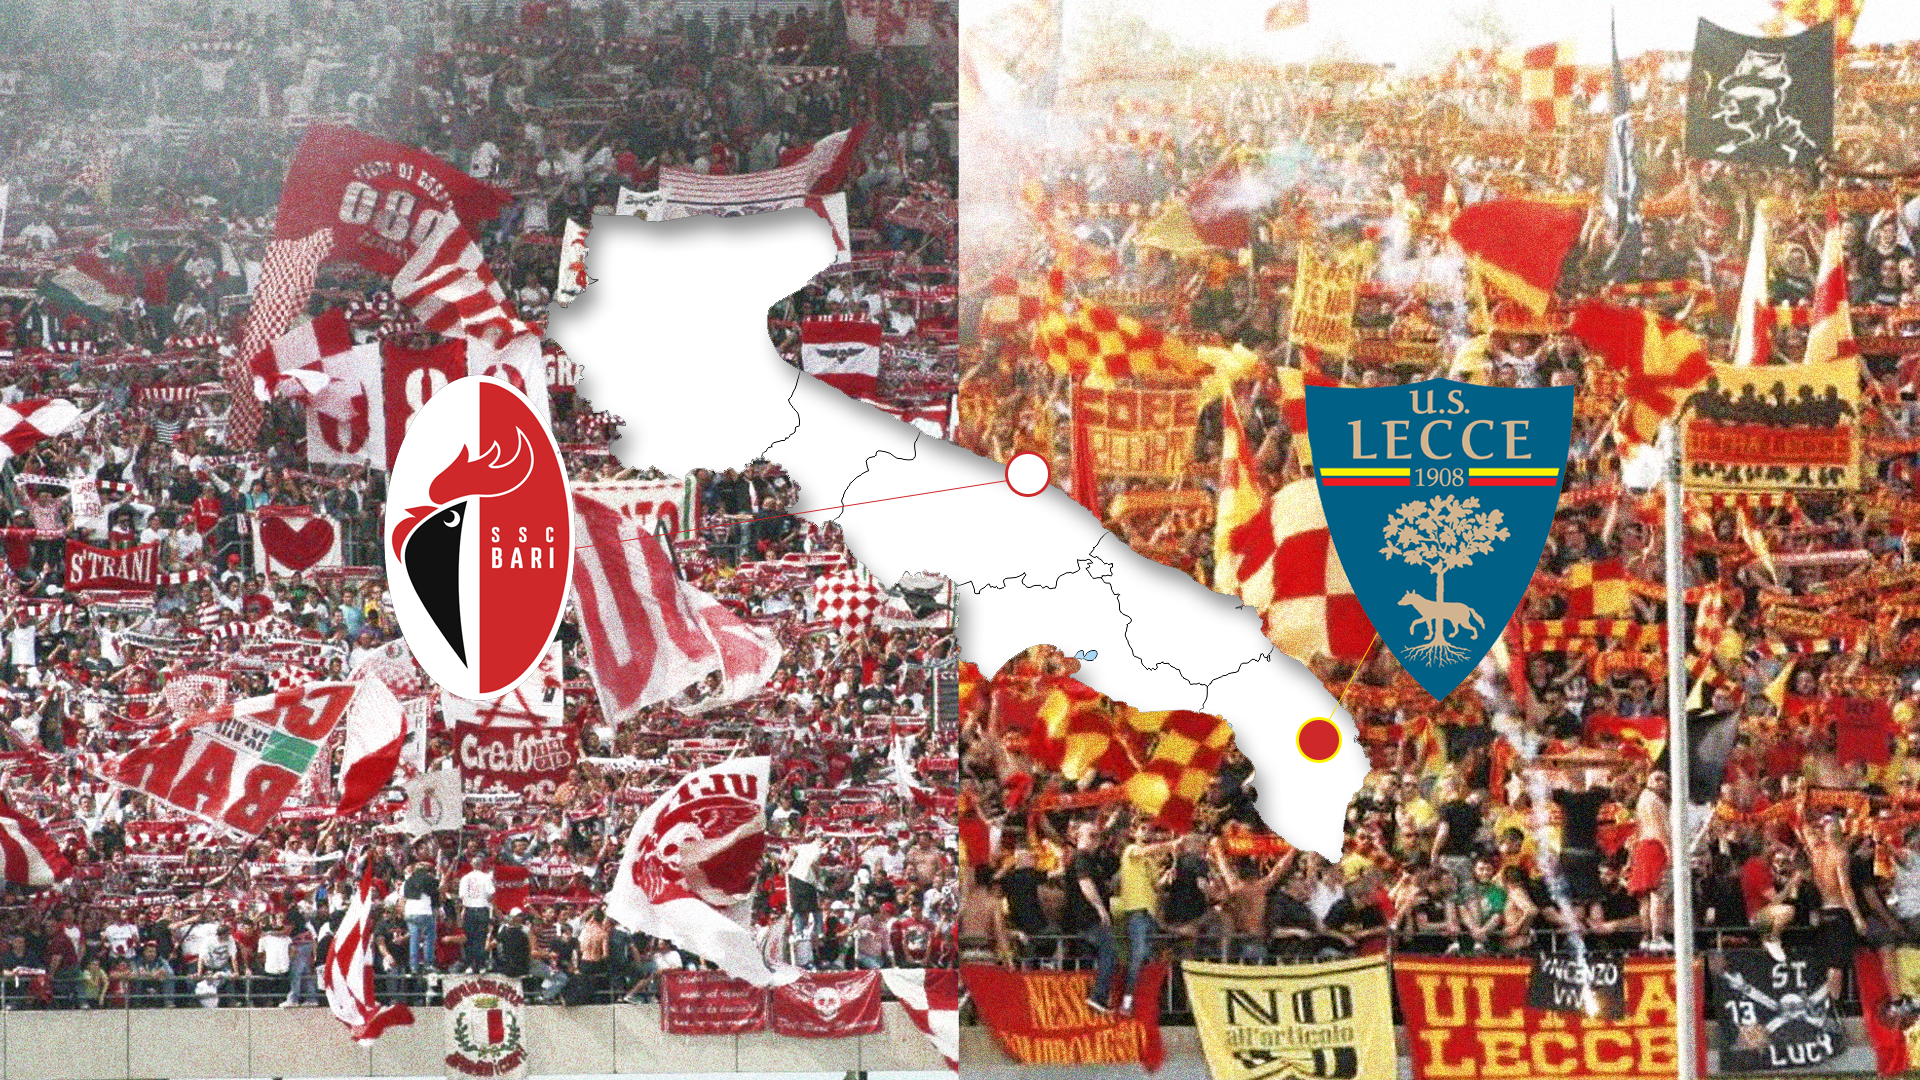 Bari vs Lecce, i due volti della Puglia